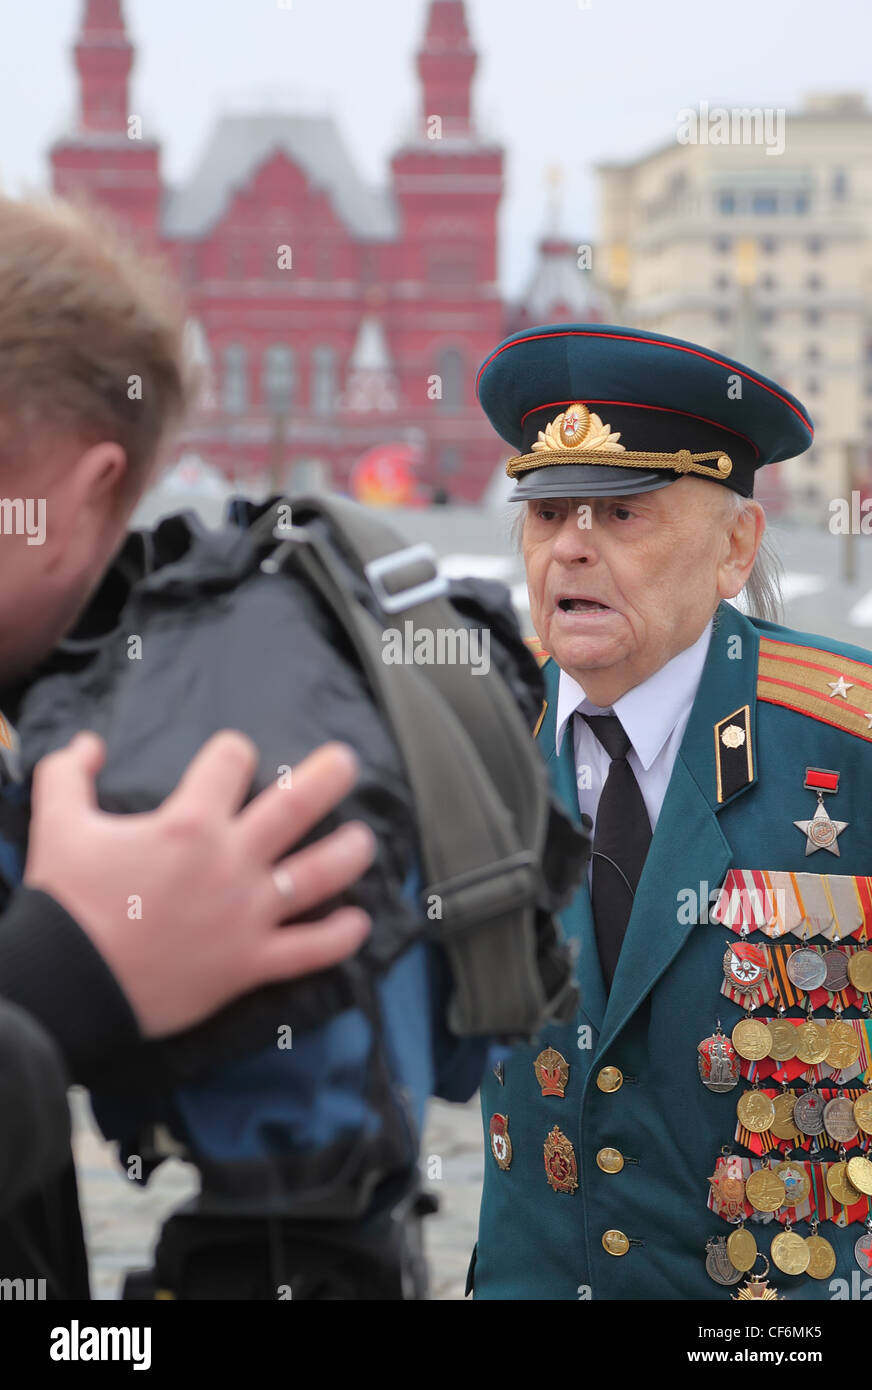 Moscou Russie 24 avril ancien combattant de la Grande guerre patriotique d'être interviewé par la télévision locale société 24 avril 2010 Moscou La Russie. Banque D'Images